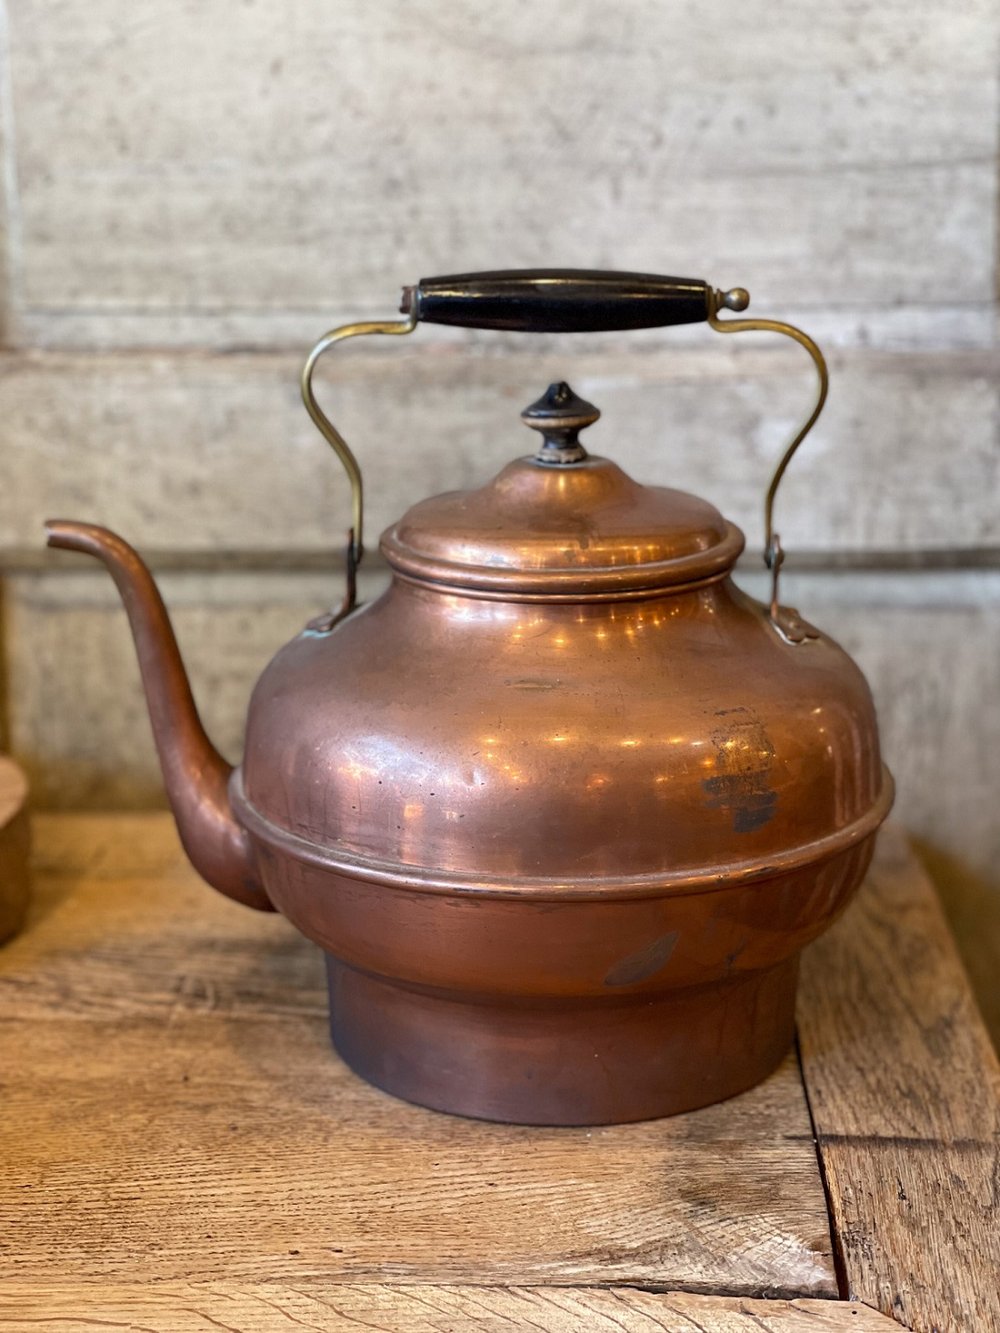 https://images.squarespace-cdn.com/content/v1/5992e51a6a49634687ed5b48/1693449553947-R76BCXIYDZ9D6SFUL0MW/antique-copper-tea-kettle-teapot-gooseneck-spout+%284%29.jpg?format=1000w